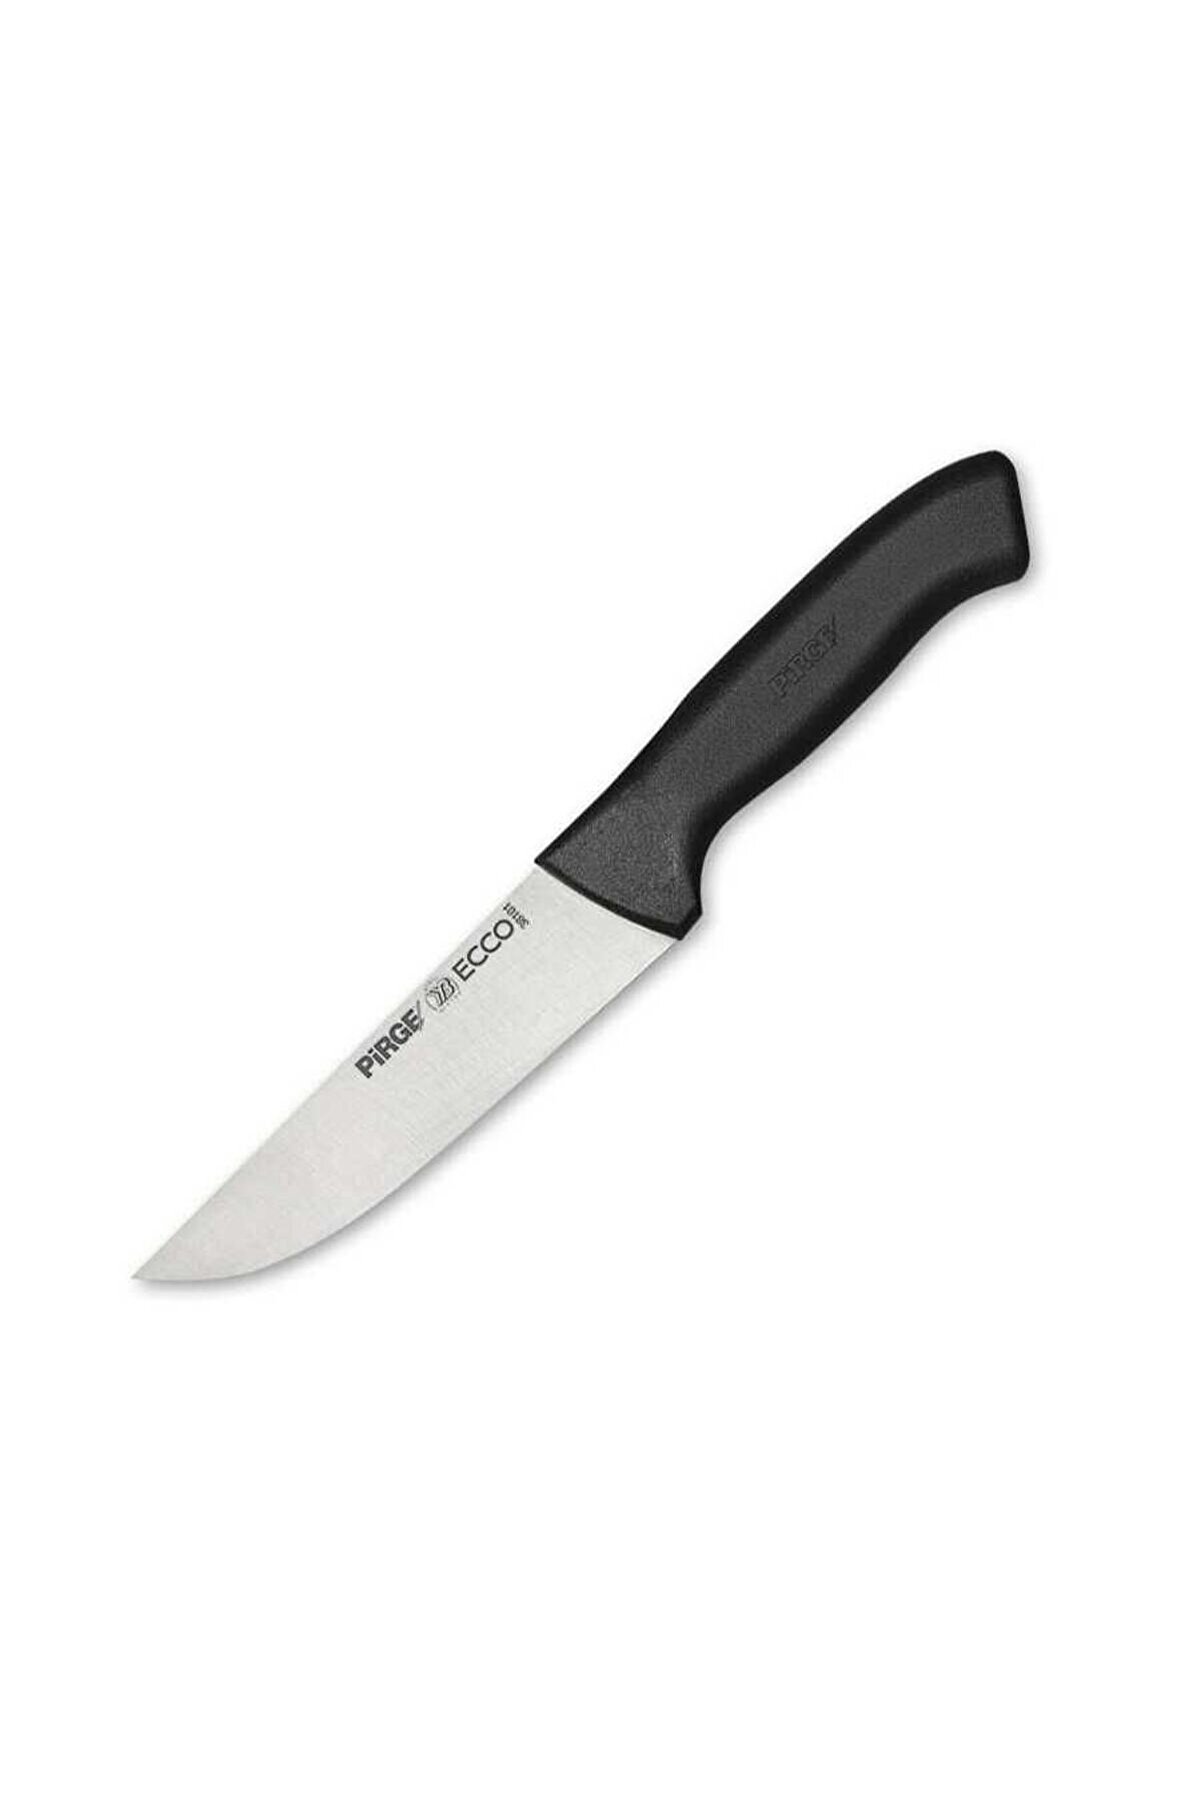 Pirge Pirge Ecco Sıyırma Bıçağı 14.5 Cm 38118